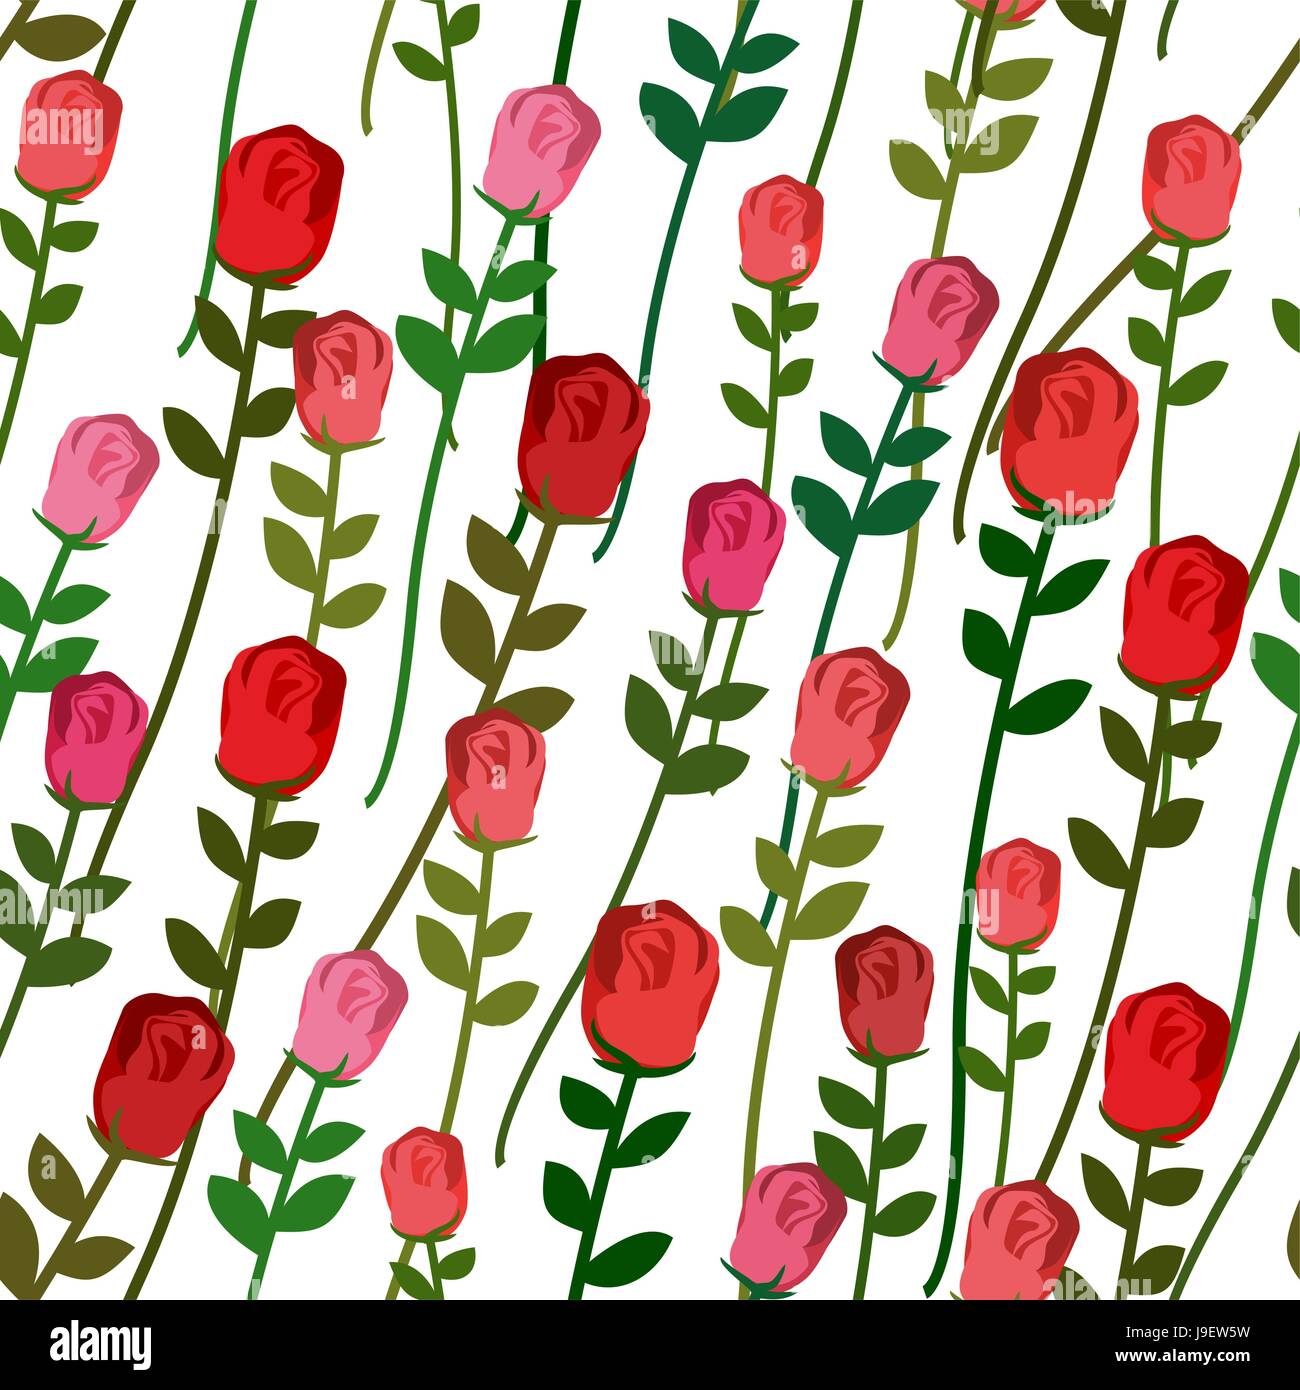 Nahtlose Muster Rosen. Rose mit einem langen Stiel und Blättern. Vektor-Vintage-Hintergrund der schönen roten und rosa Blüten. Floral retro Ornament. Stock Vektor